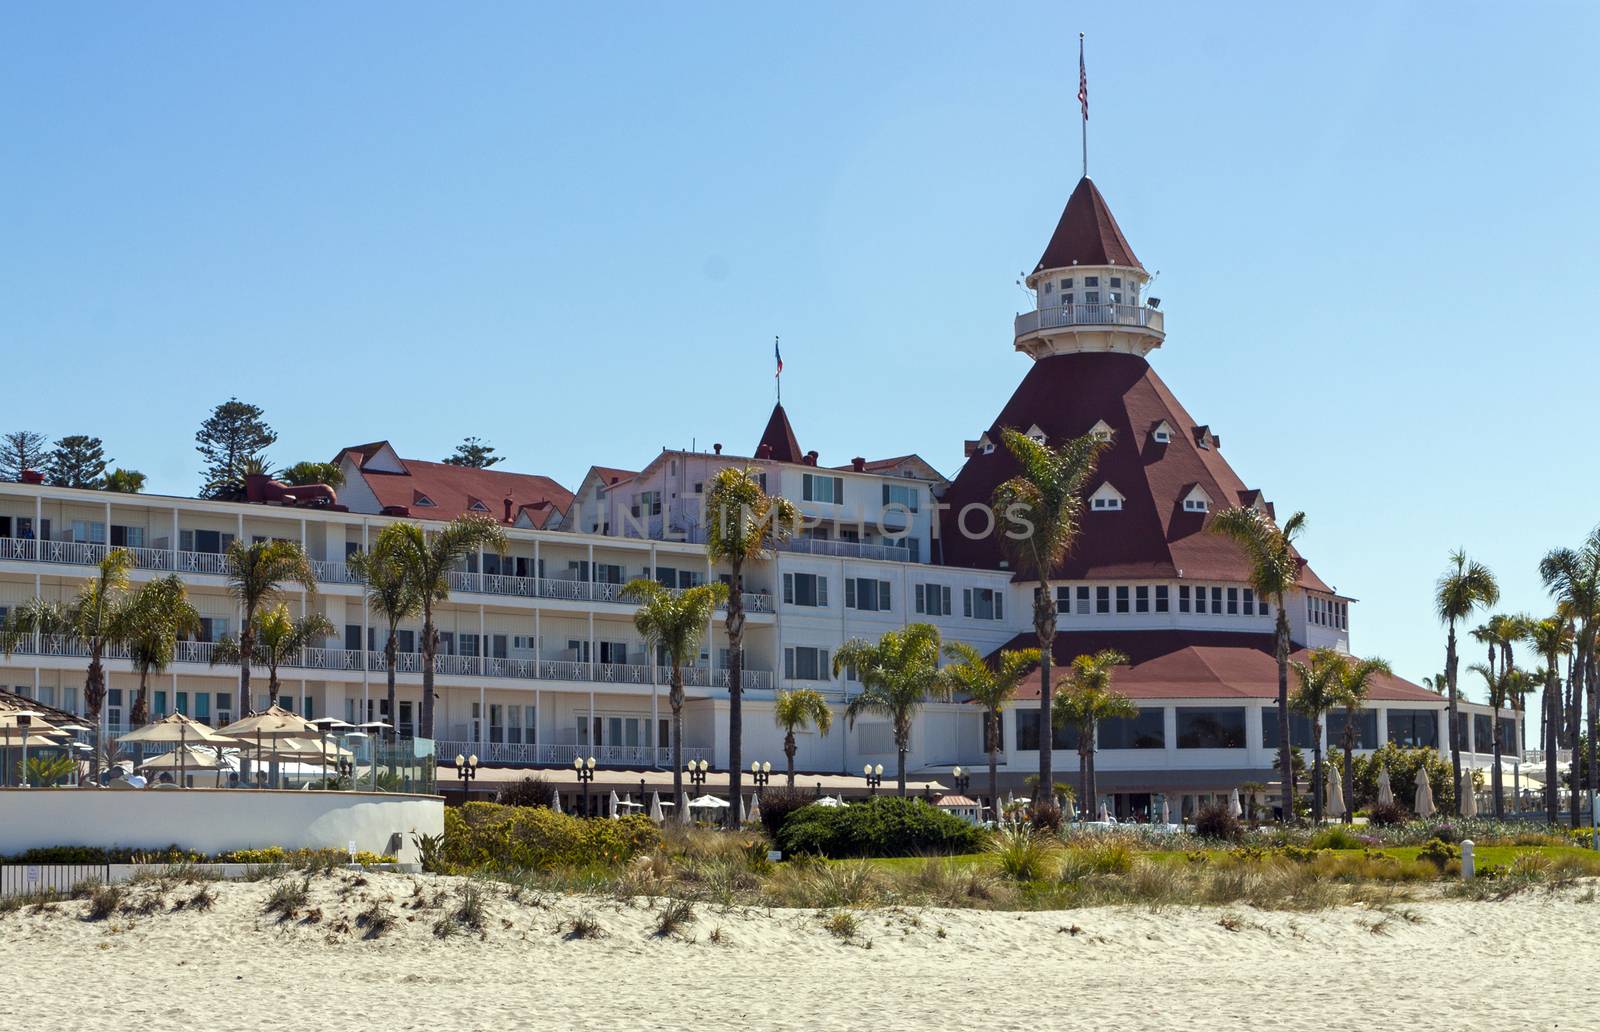 Coronado,Ca - April 07:View from the beach of the historic Hotel del Coronado,California on April 07,2014.